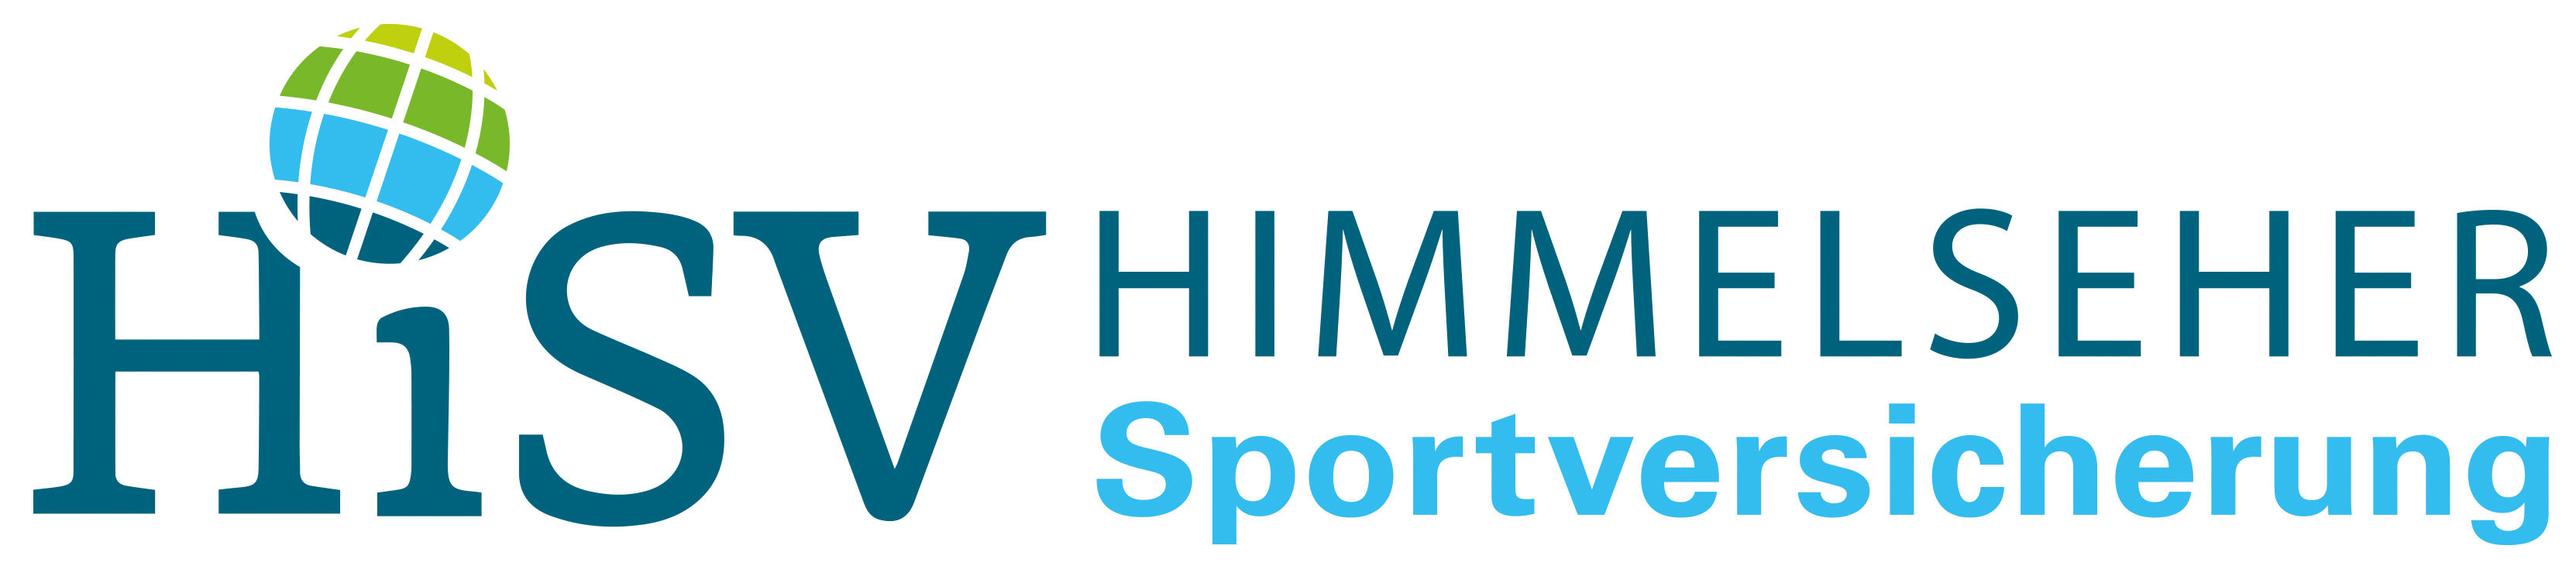 Himmelseher logo